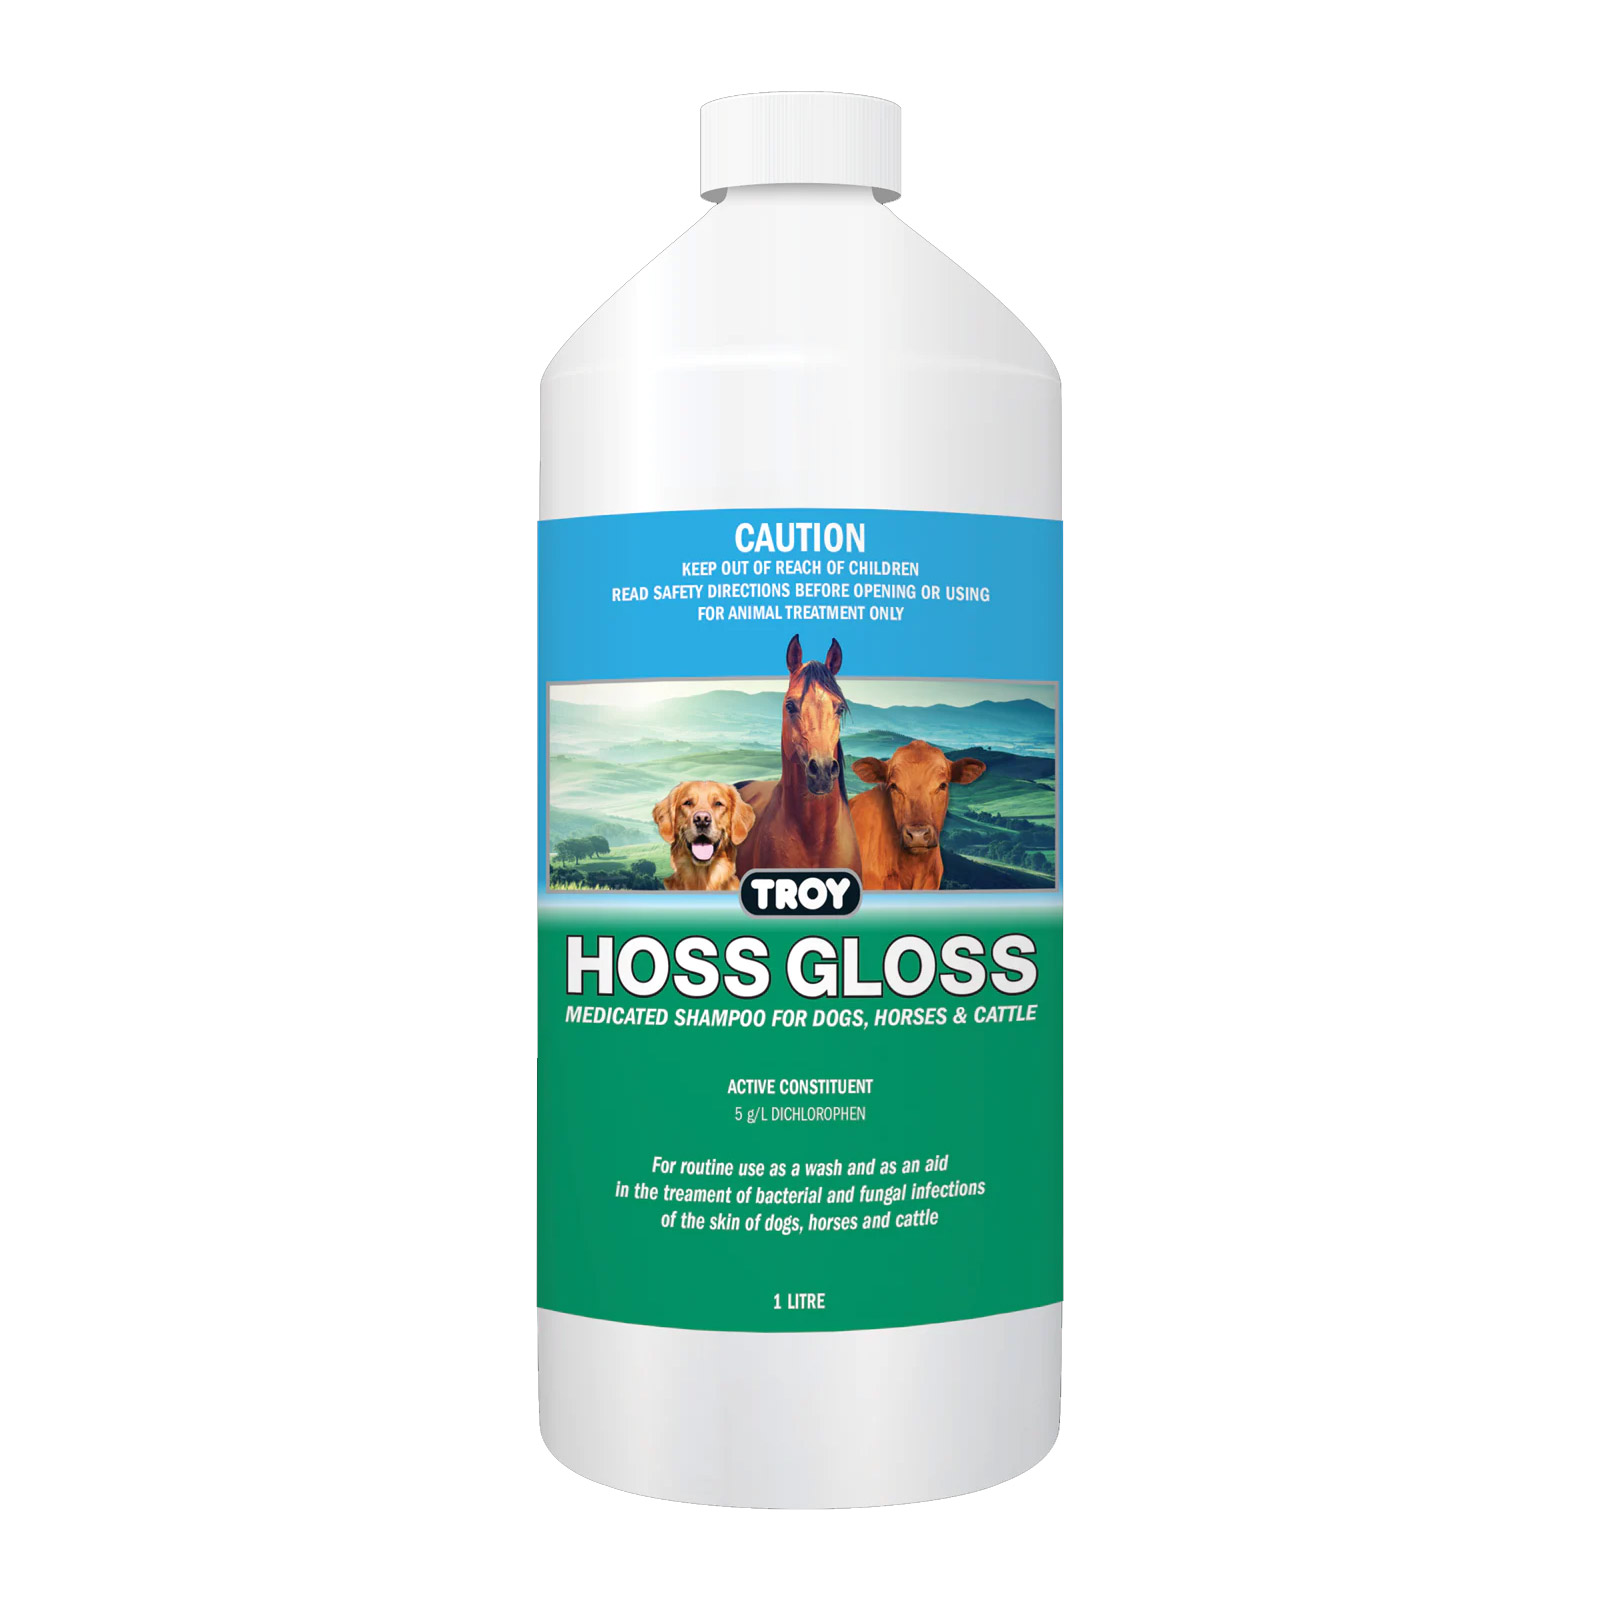 Troy Hoss Gloss for Horse